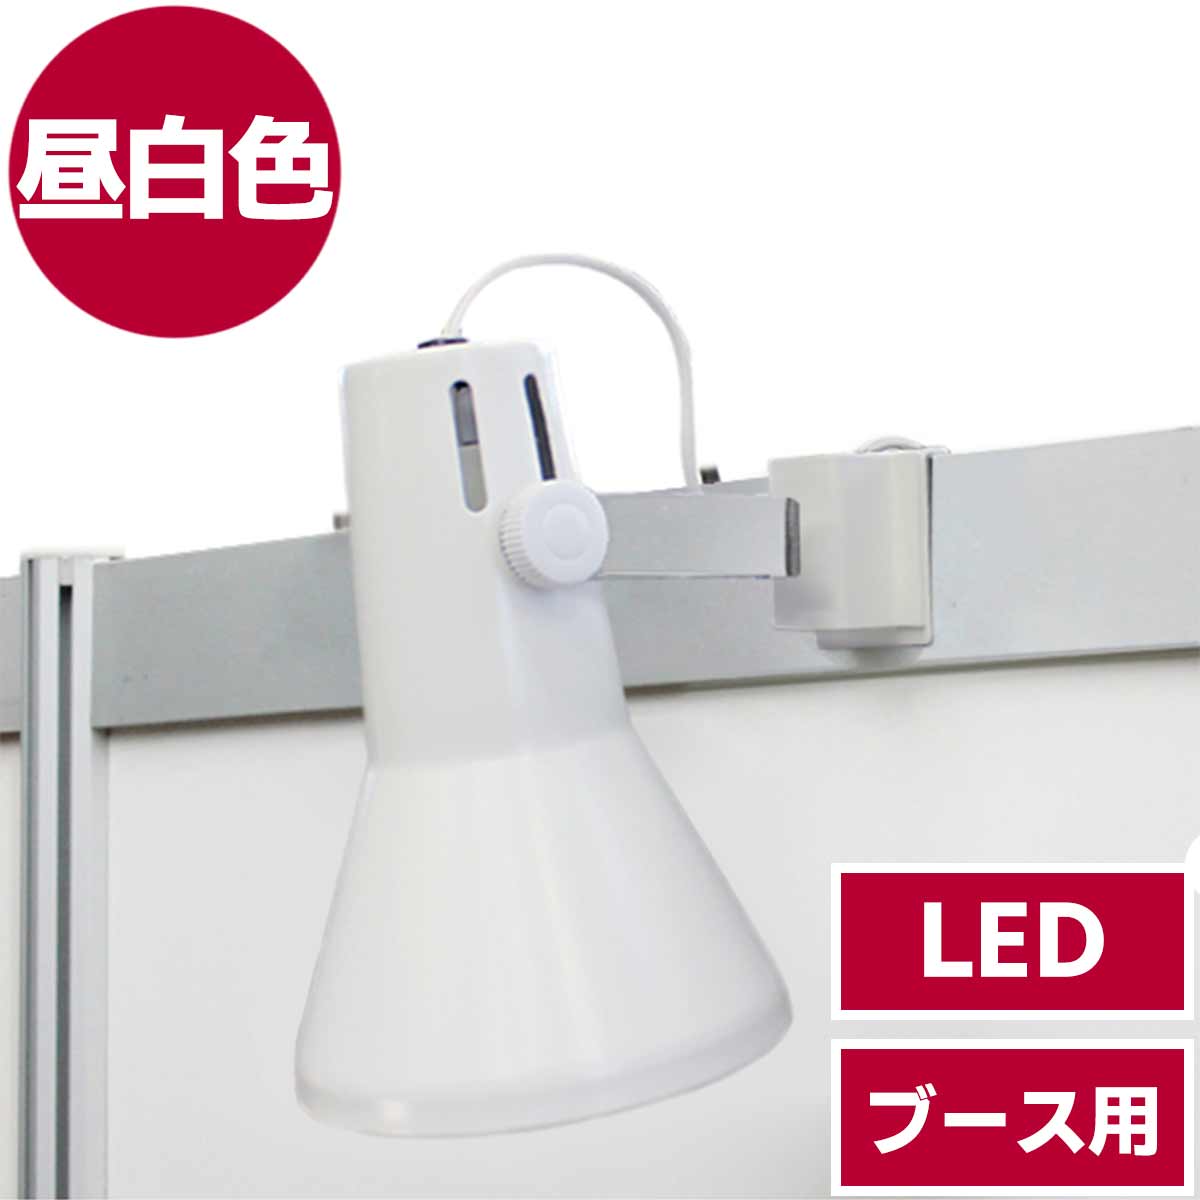 ブース用LEDスポットライト(昼白色)